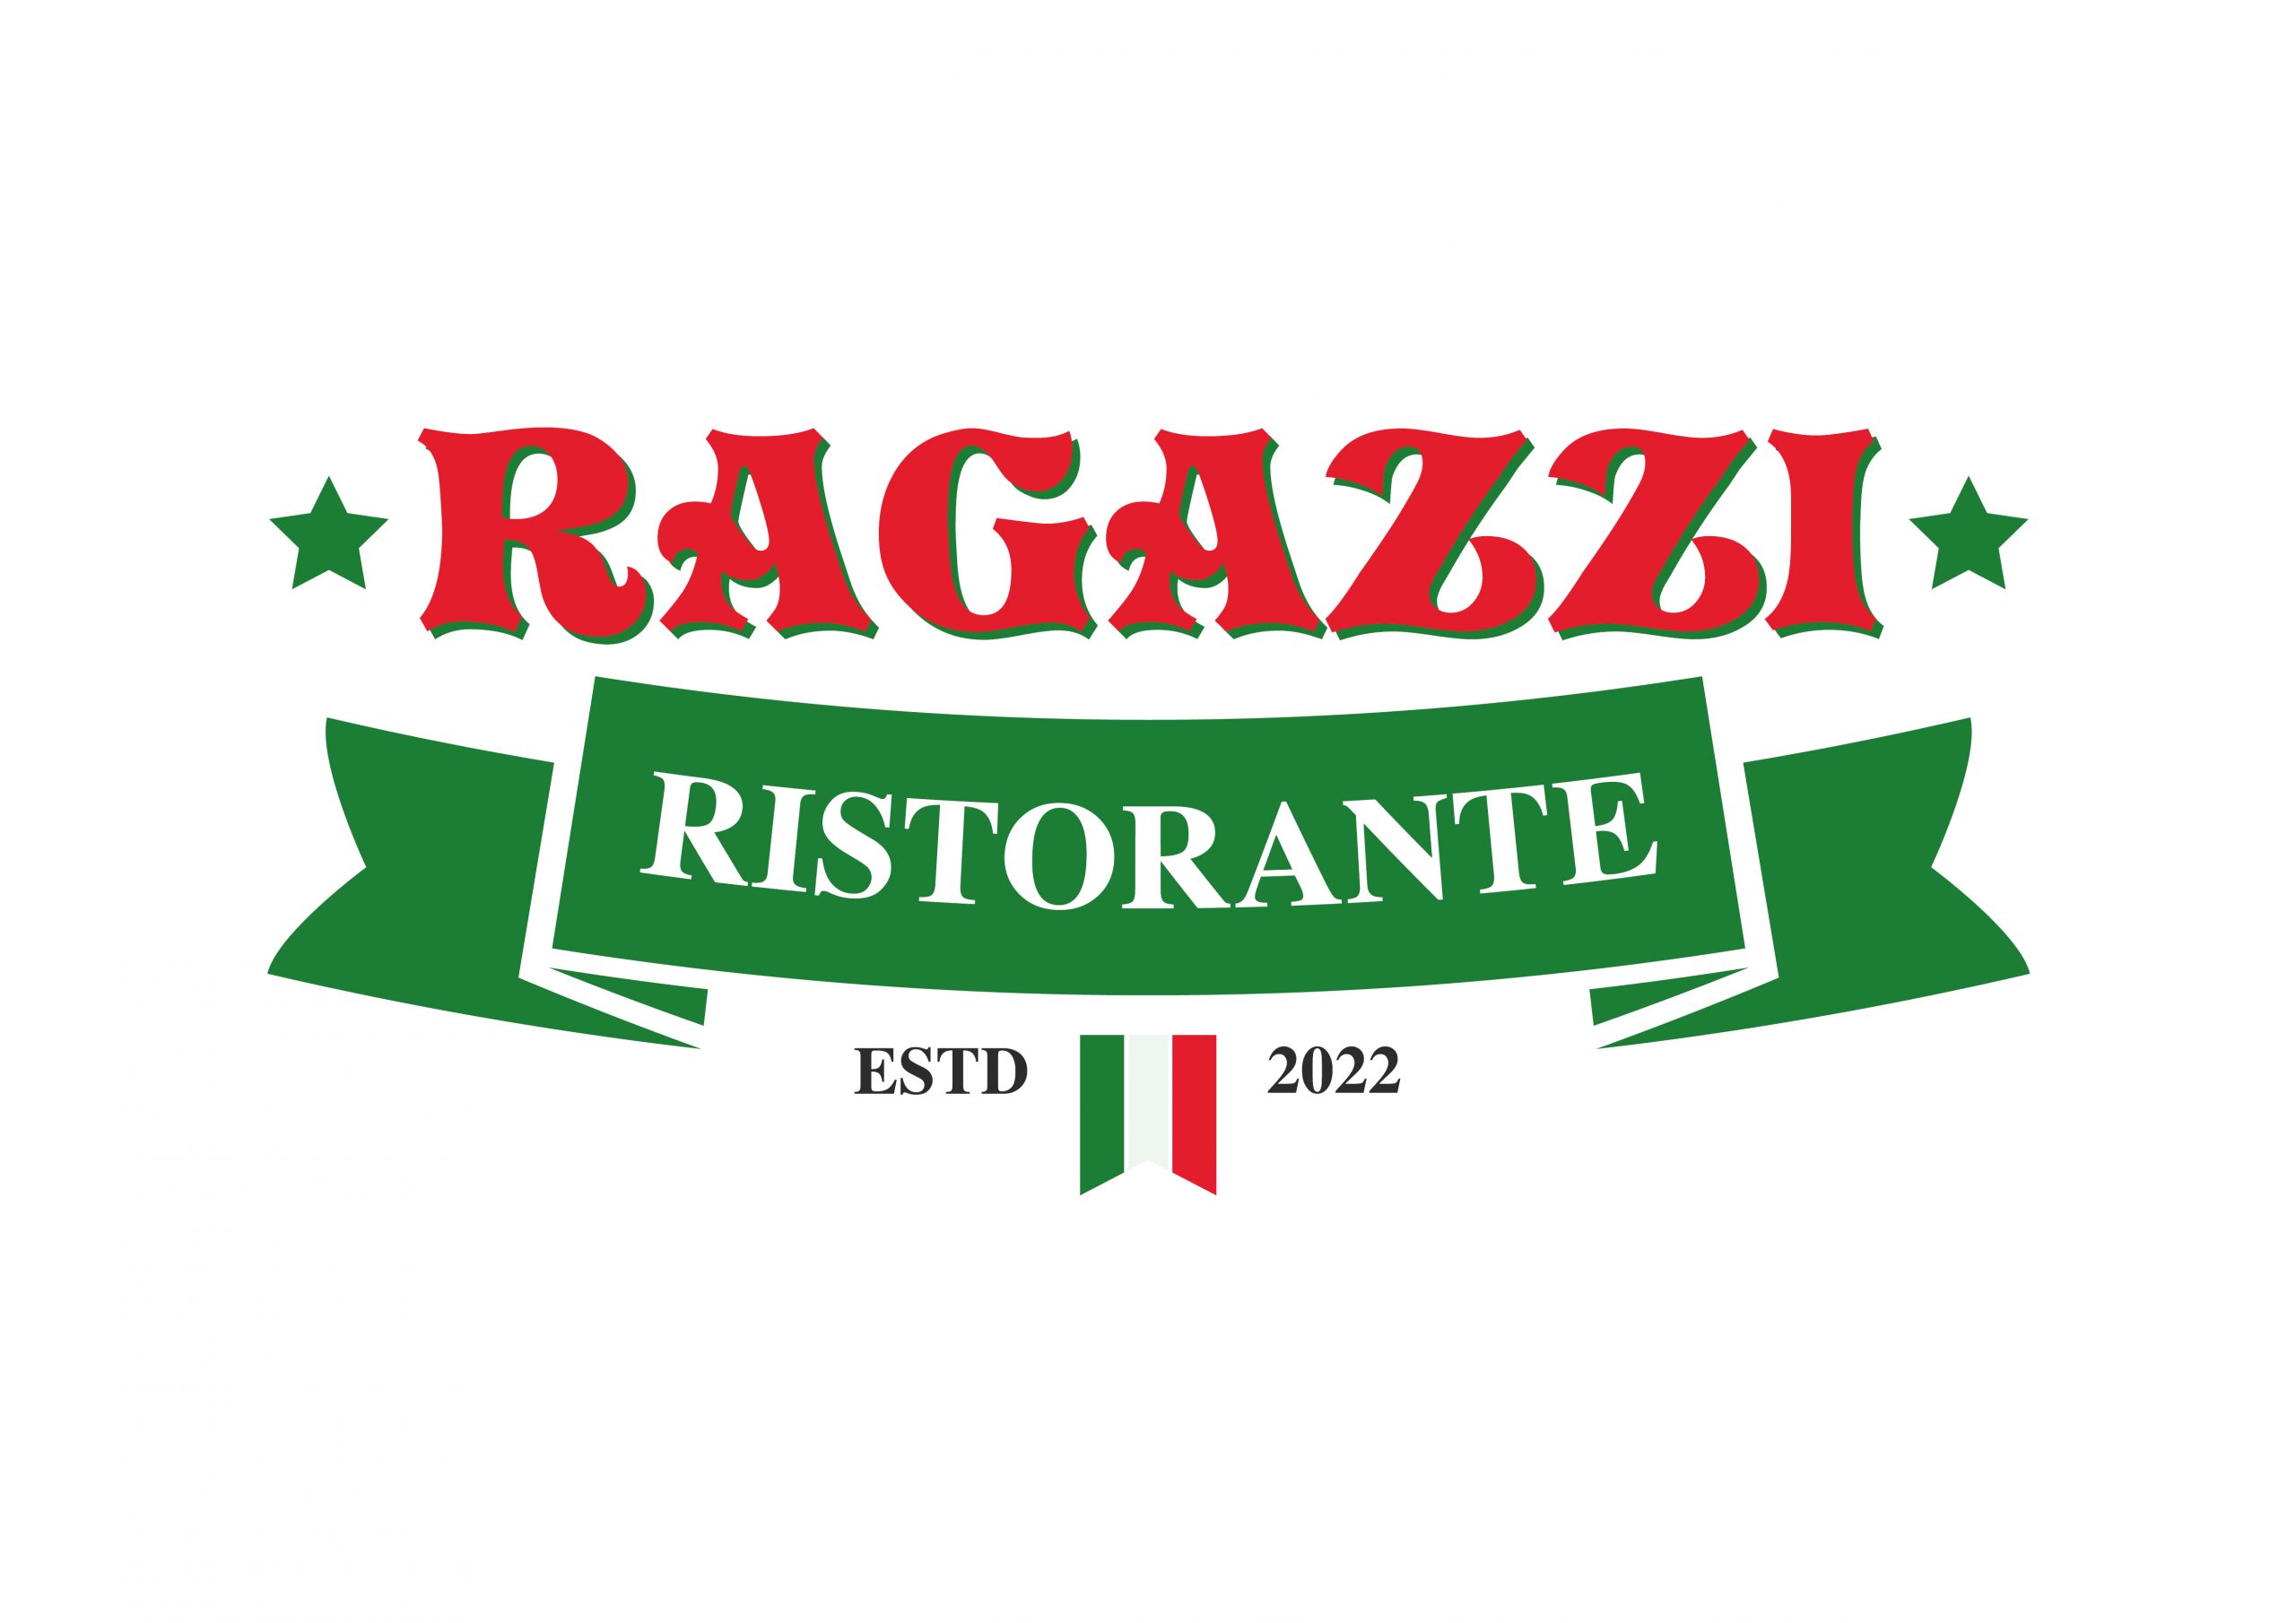 Ragazzi-Ristorante-Logo-scaled